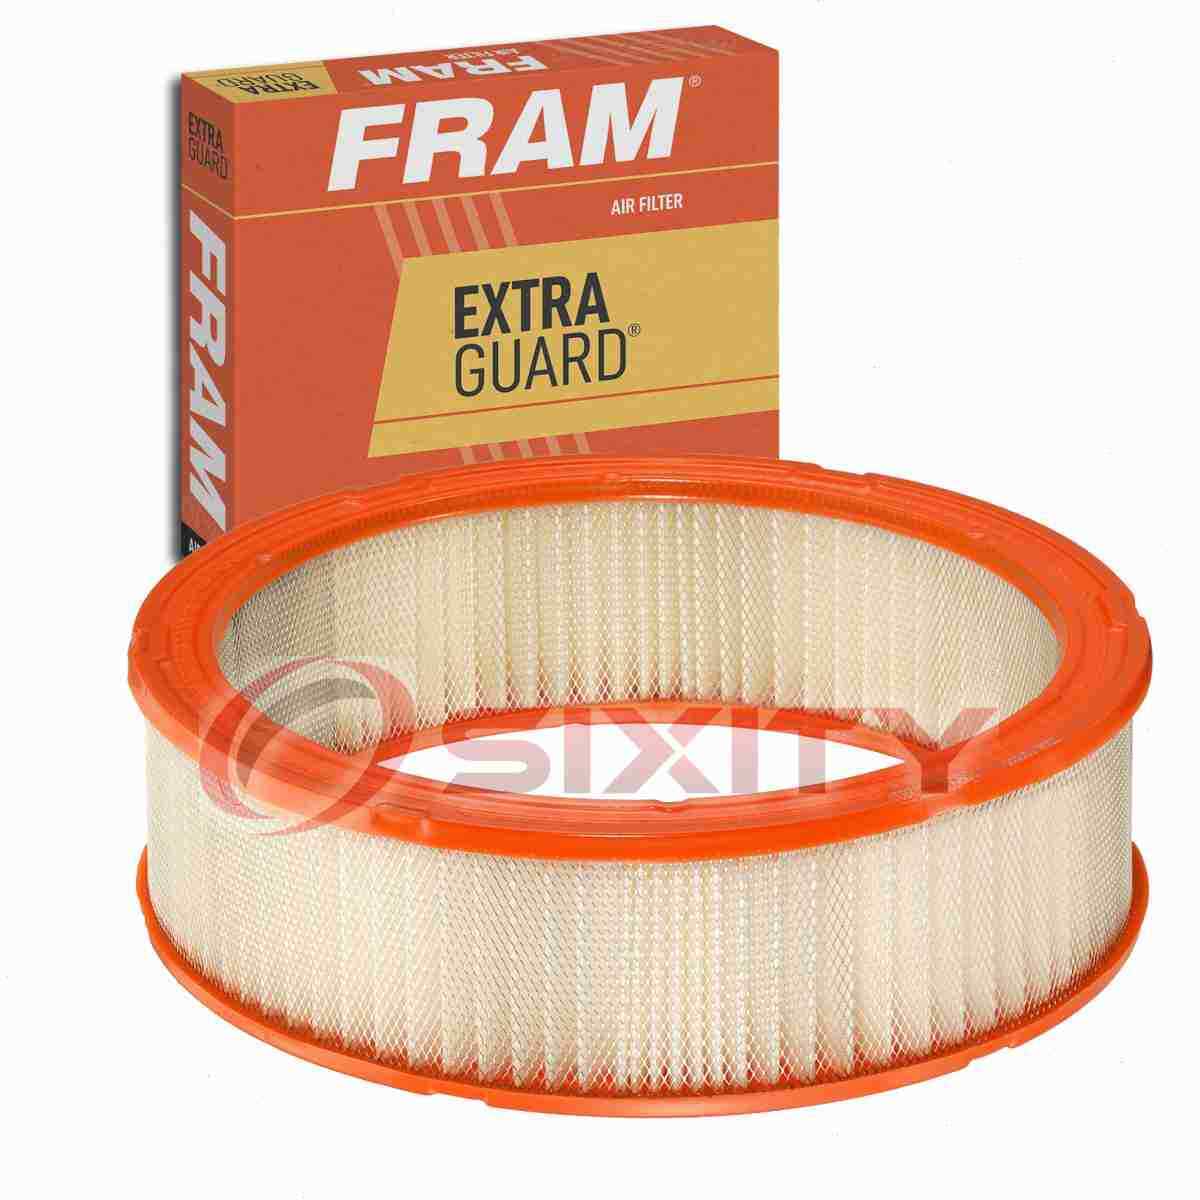 FRAM Extra Guard CA3588 Air Filter for TA43195 LX 2548 LAF388 E-9180 E-1460 ub